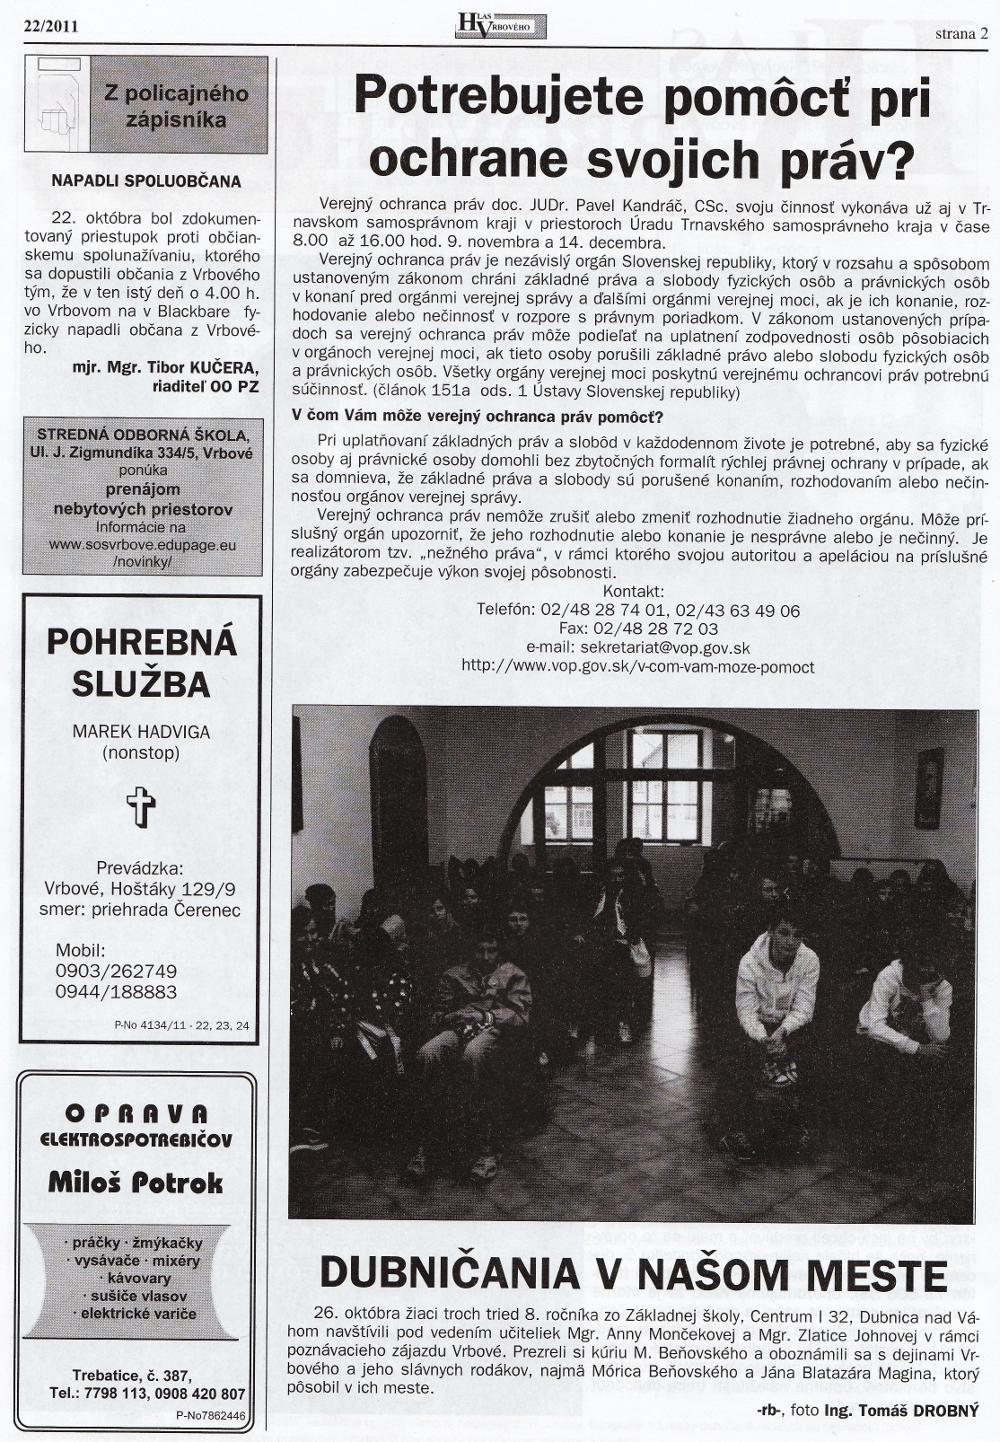 Hlas Vrbového 22/2011, strana 2